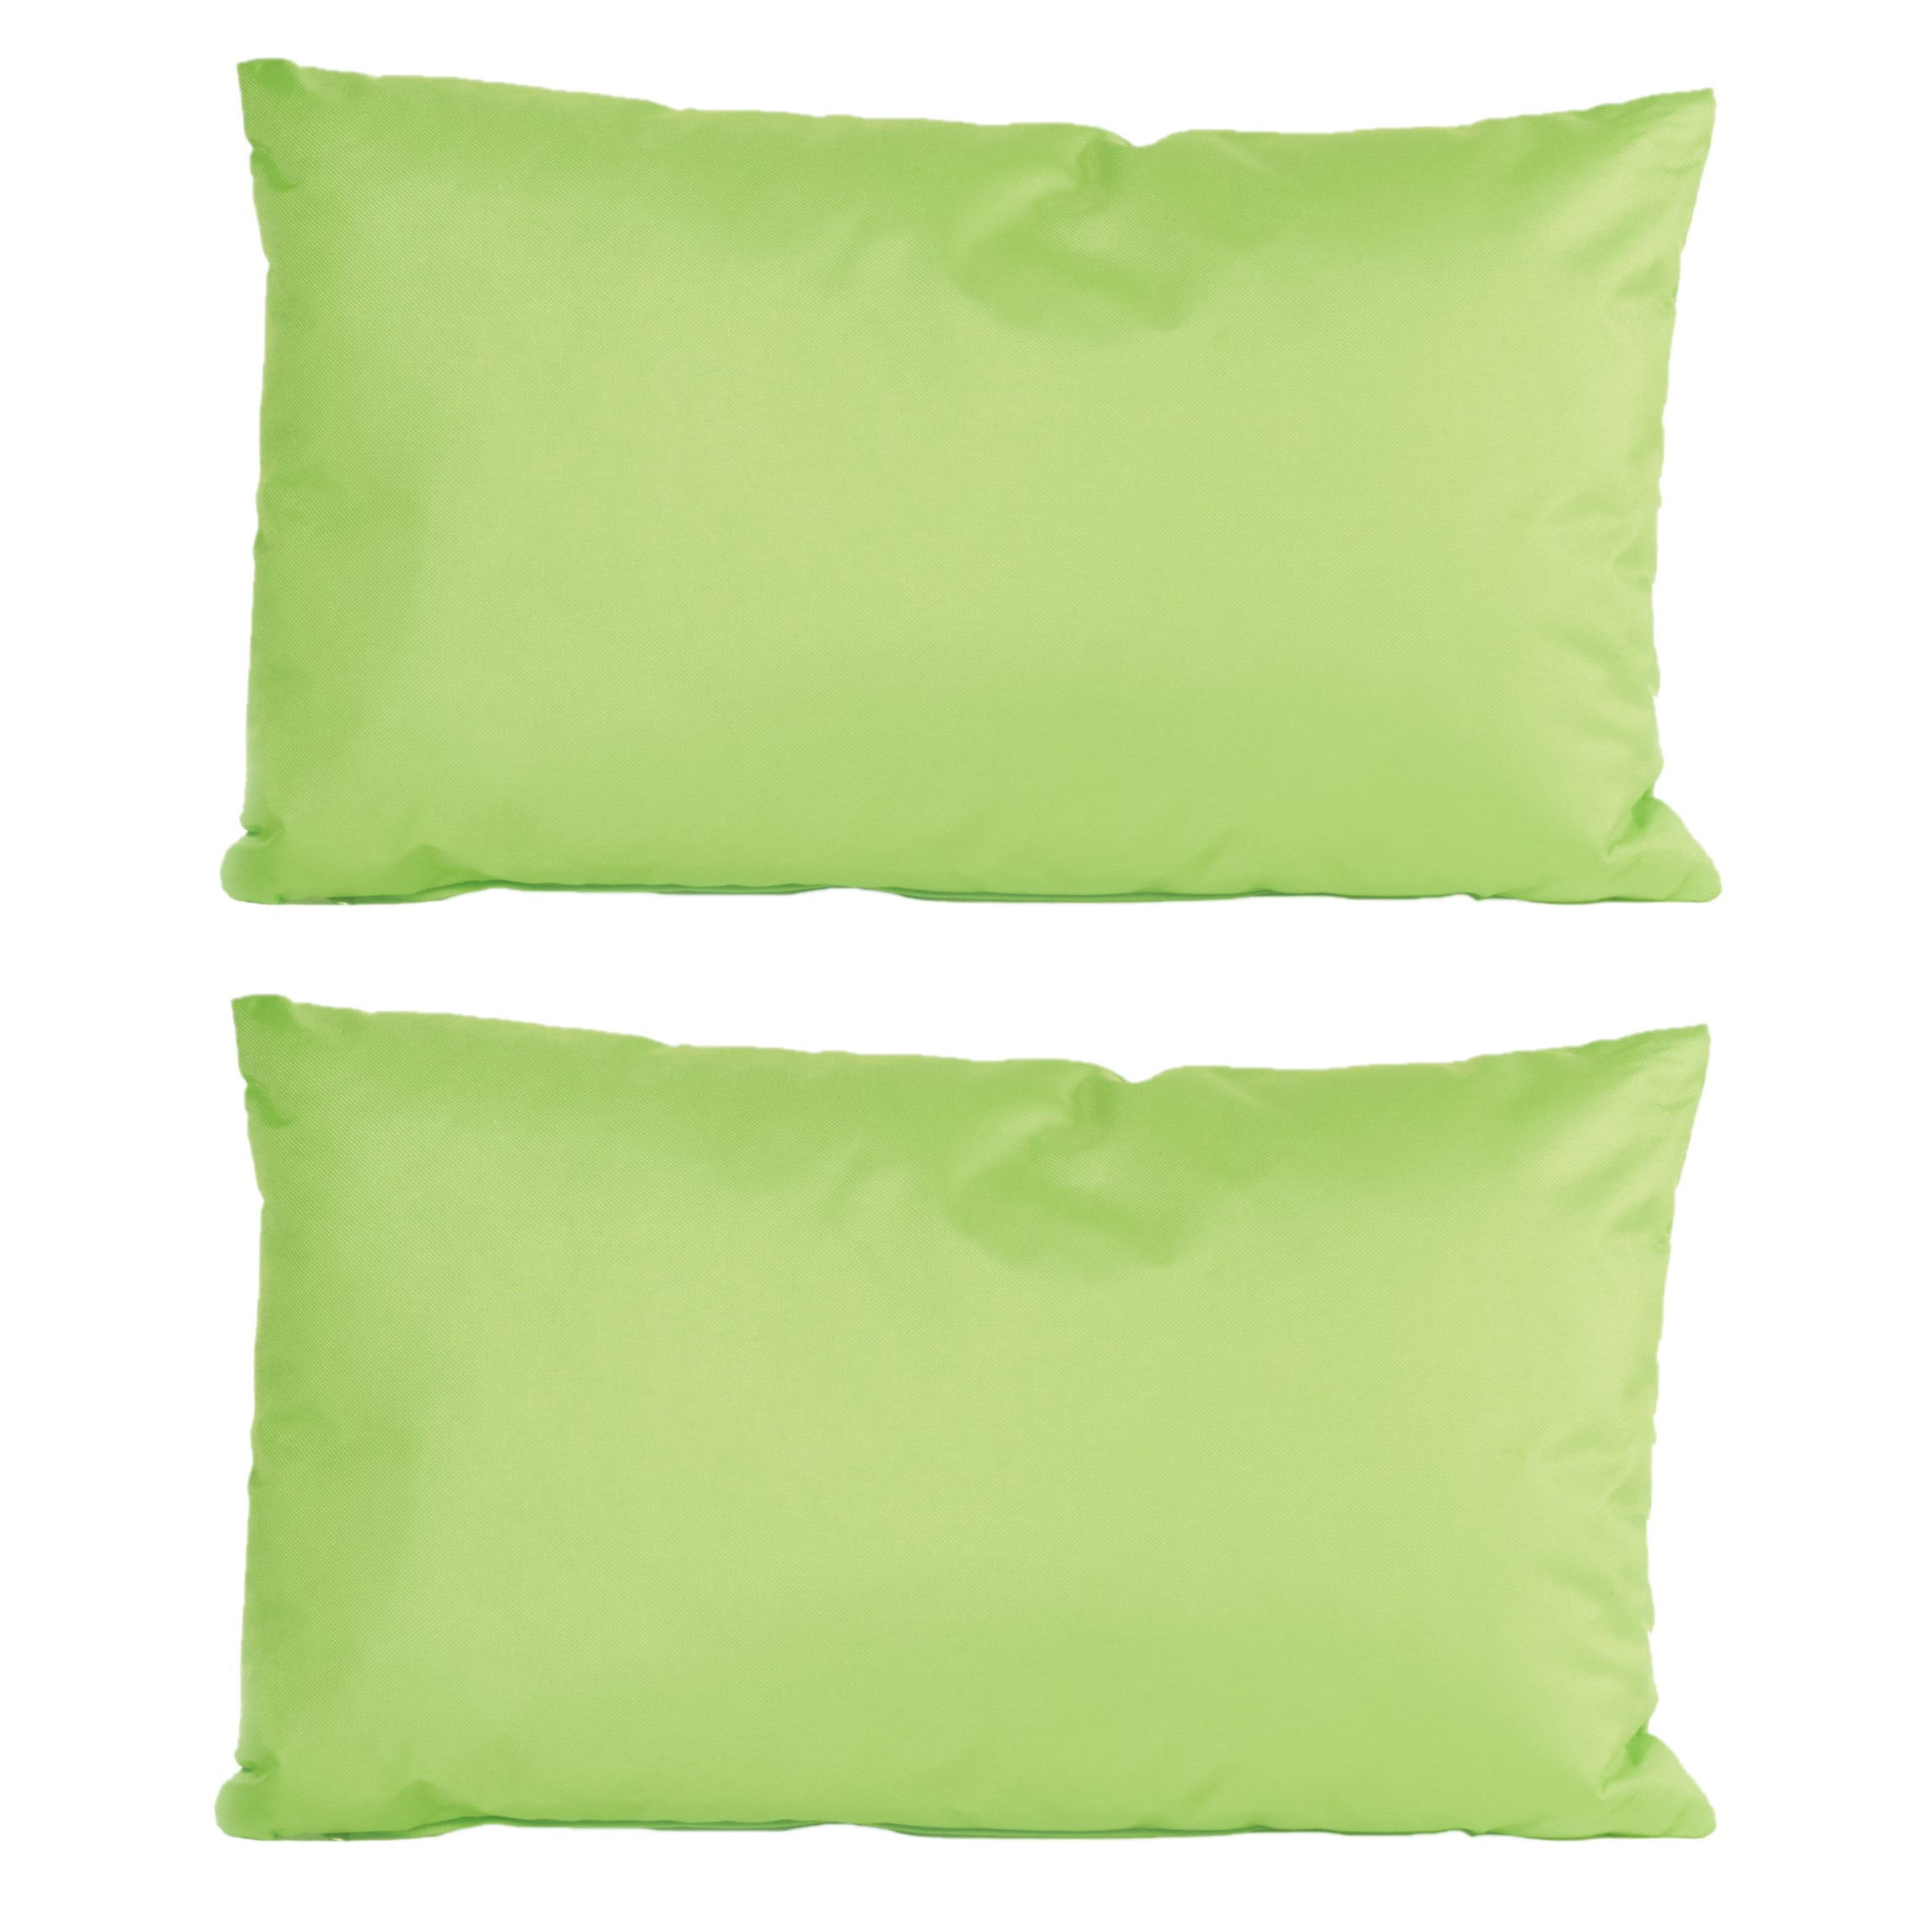 6x Bank-sier kussens voor binnen en buiten in de kleur groen 30 x 50 cm